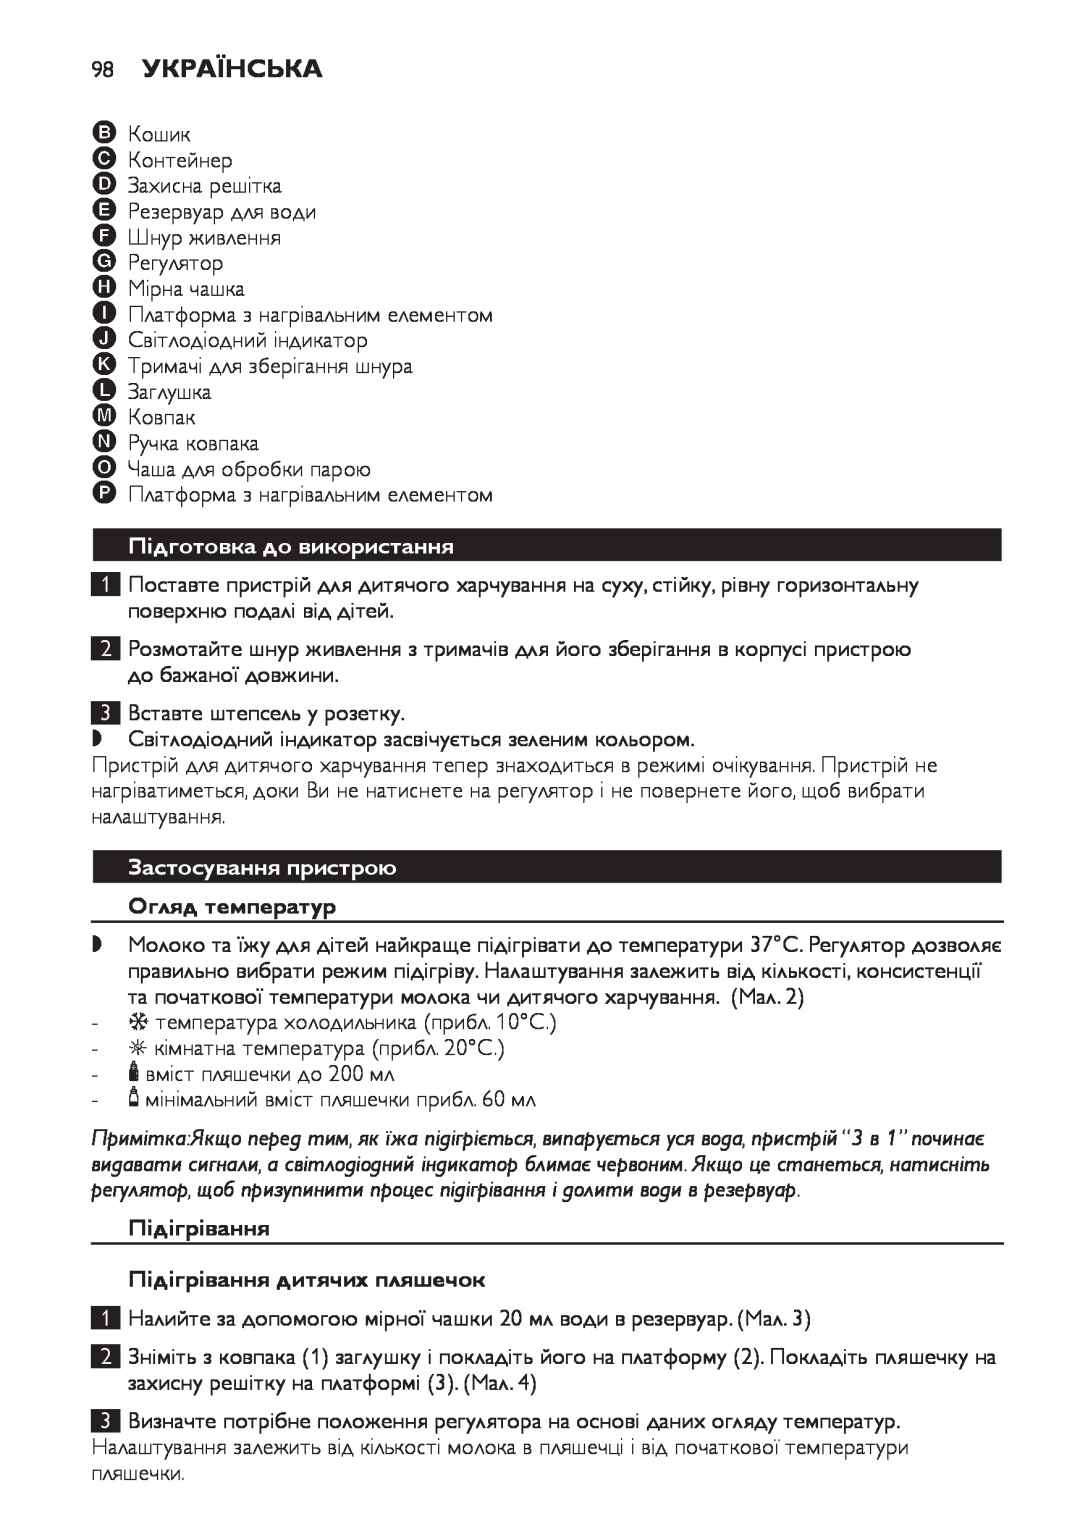 Philips SCF280 manual 98 Українська, Підготовка до використання, Застосування пристрою Огляд температур 